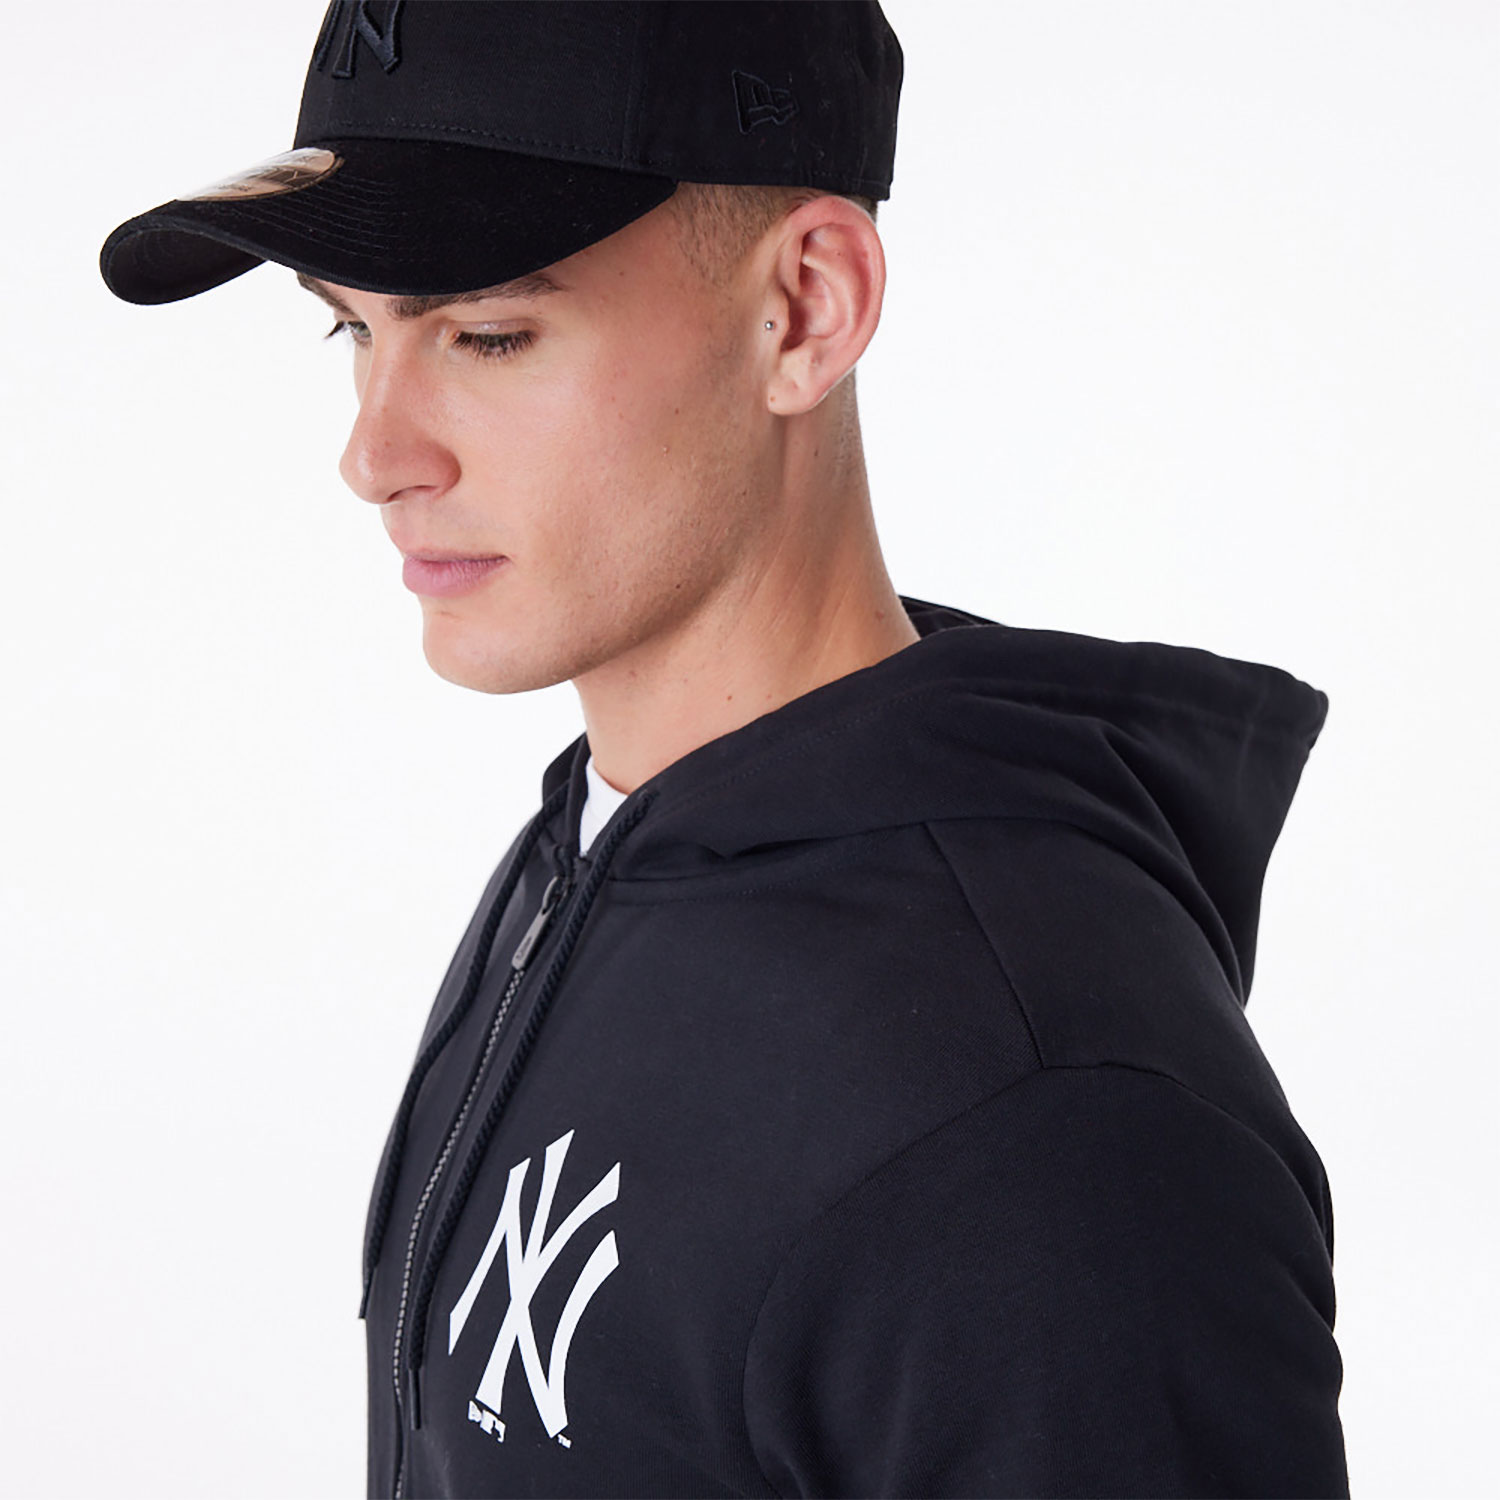 New York Yankees MLB Essential Black Full Zip Hoodie